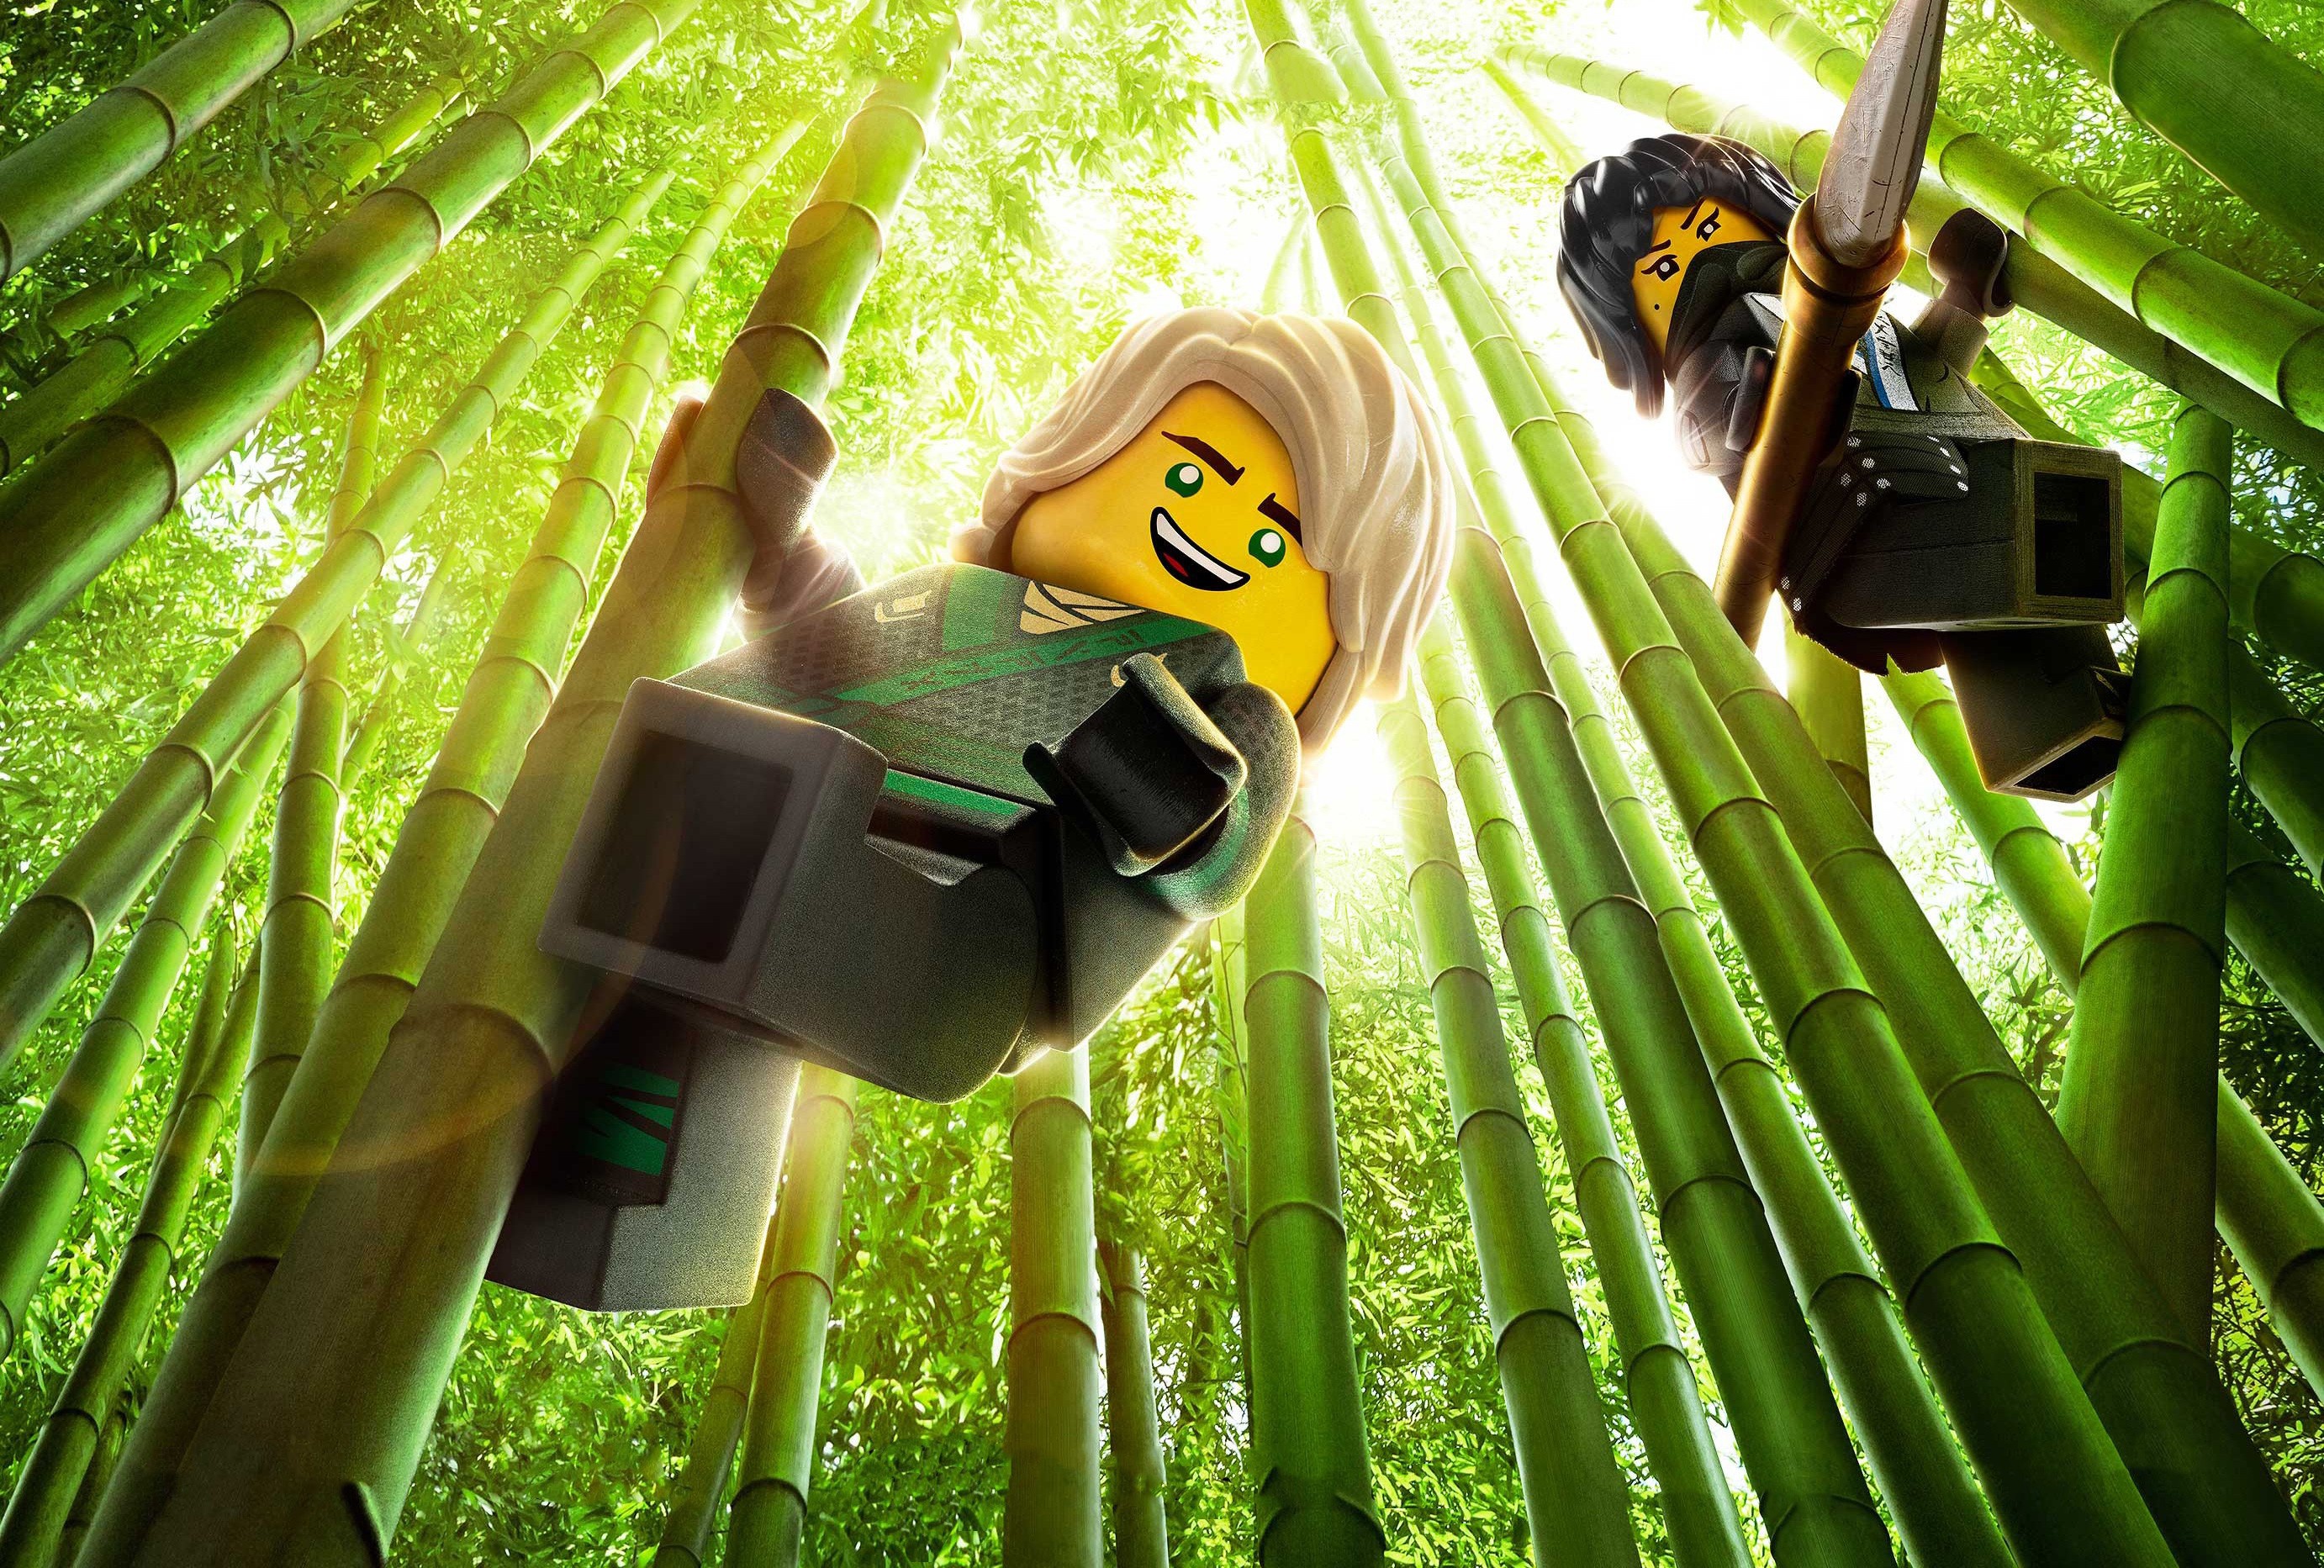 Bamboo Lego Lloyd Garmadon Nya Ninjago The Lego Ninjago Movie 2764x1865